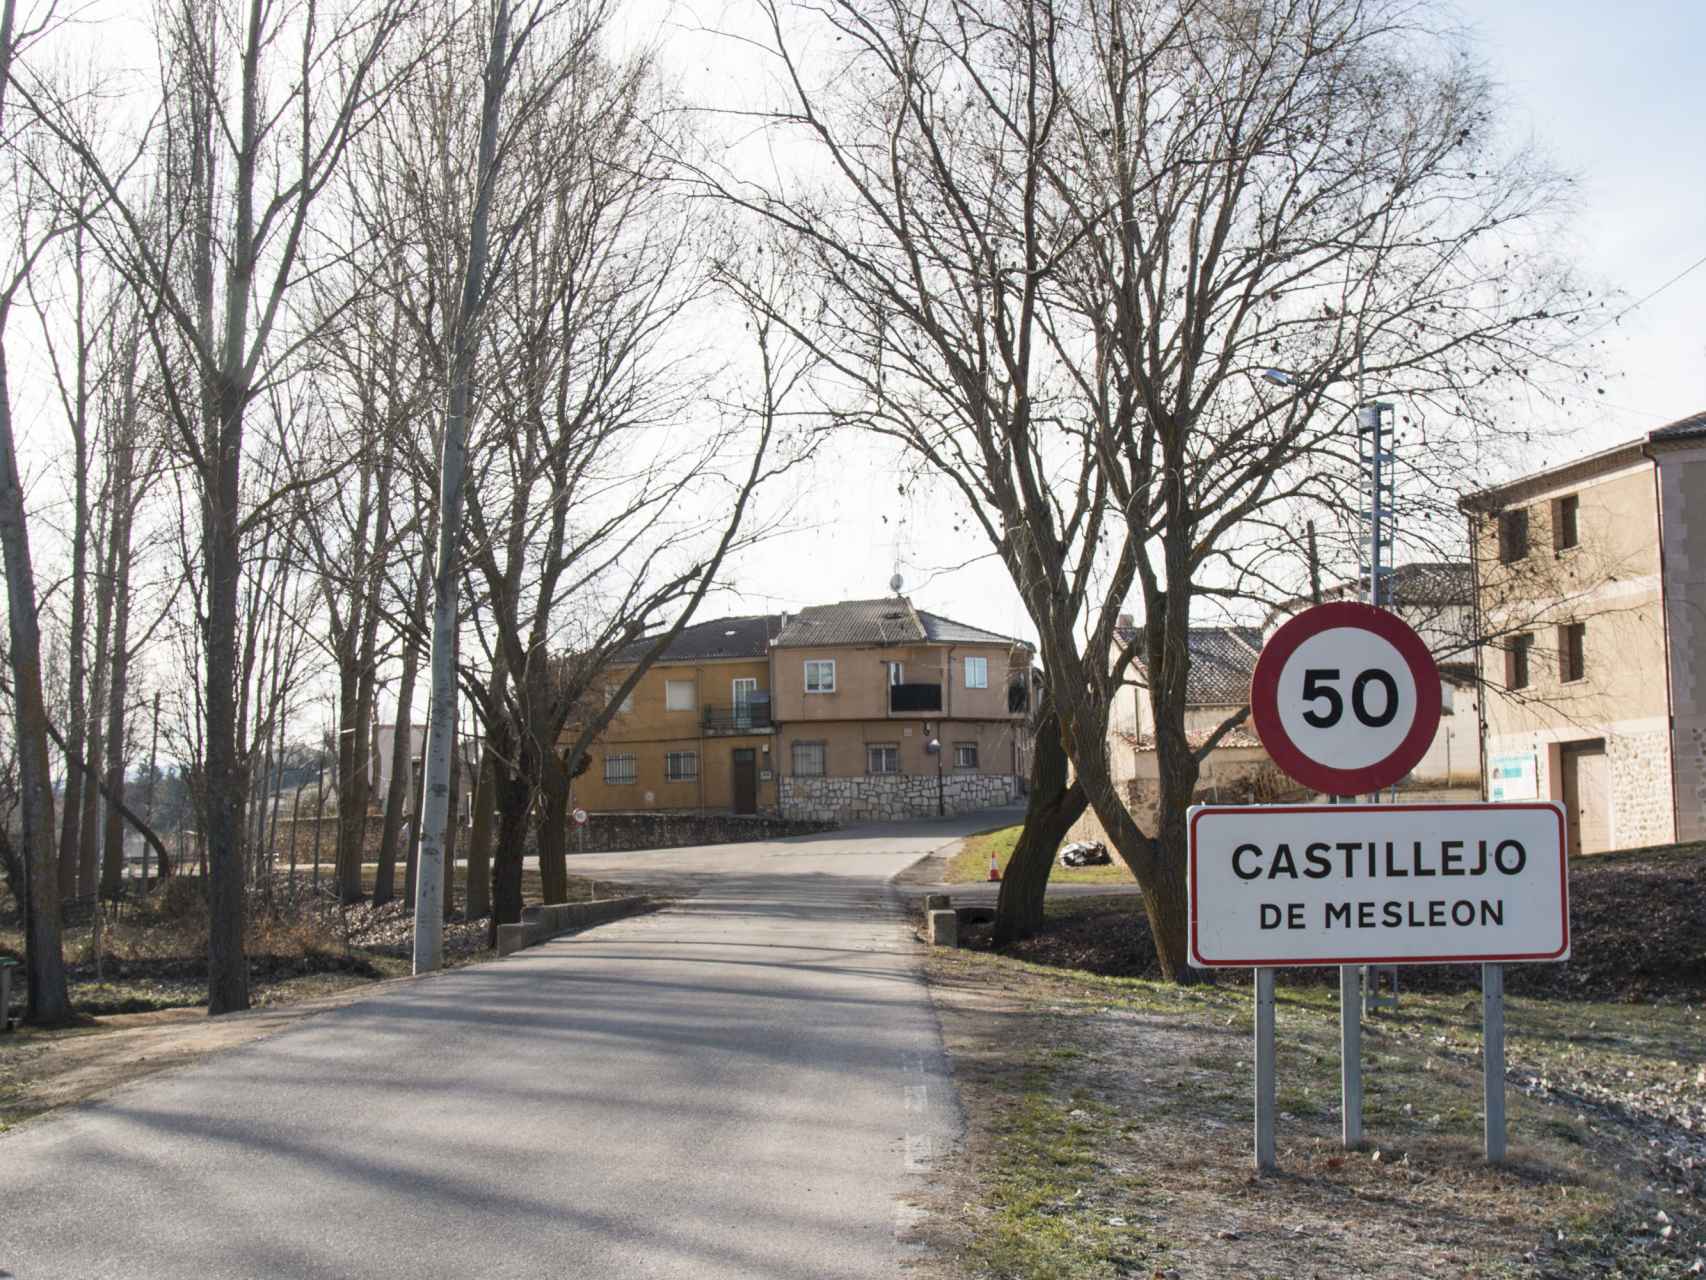 El pueblo de Castillejo de Mesleón, en Segovia, está gobernado por el regidor que más años lleva en el cargo de toda España.